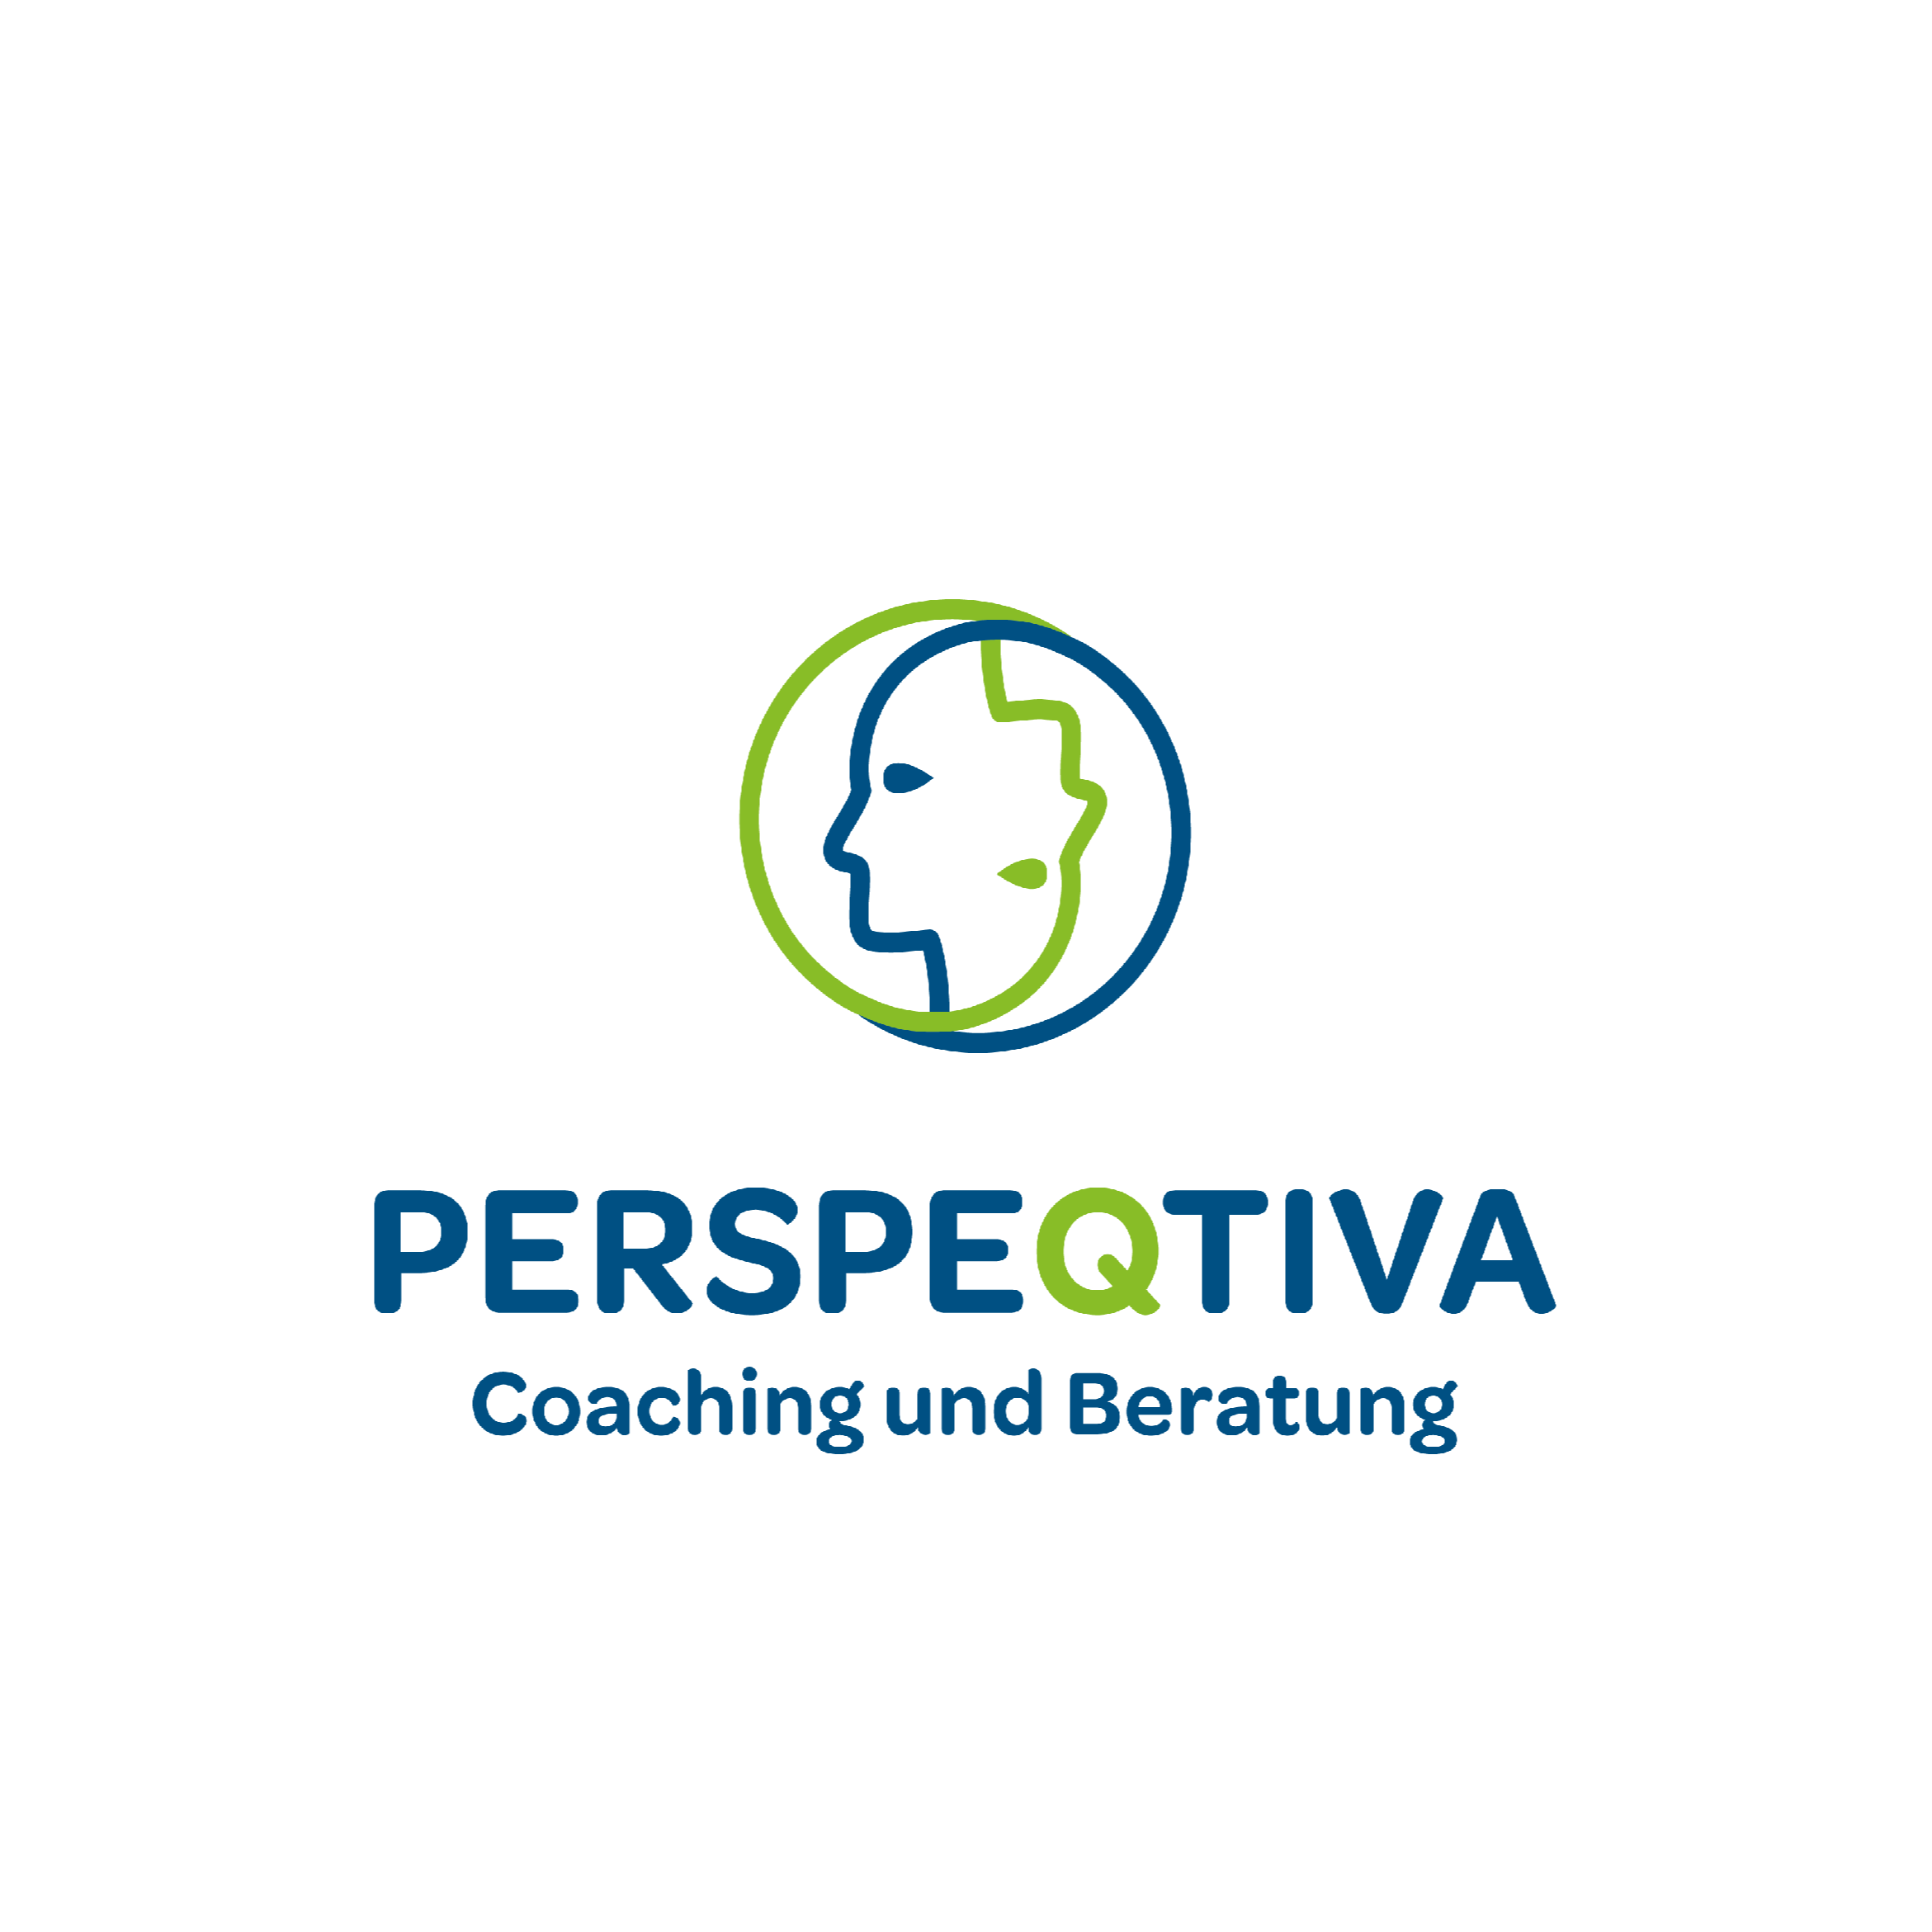 Perspeqtiva - Coaching und Beratung Logo